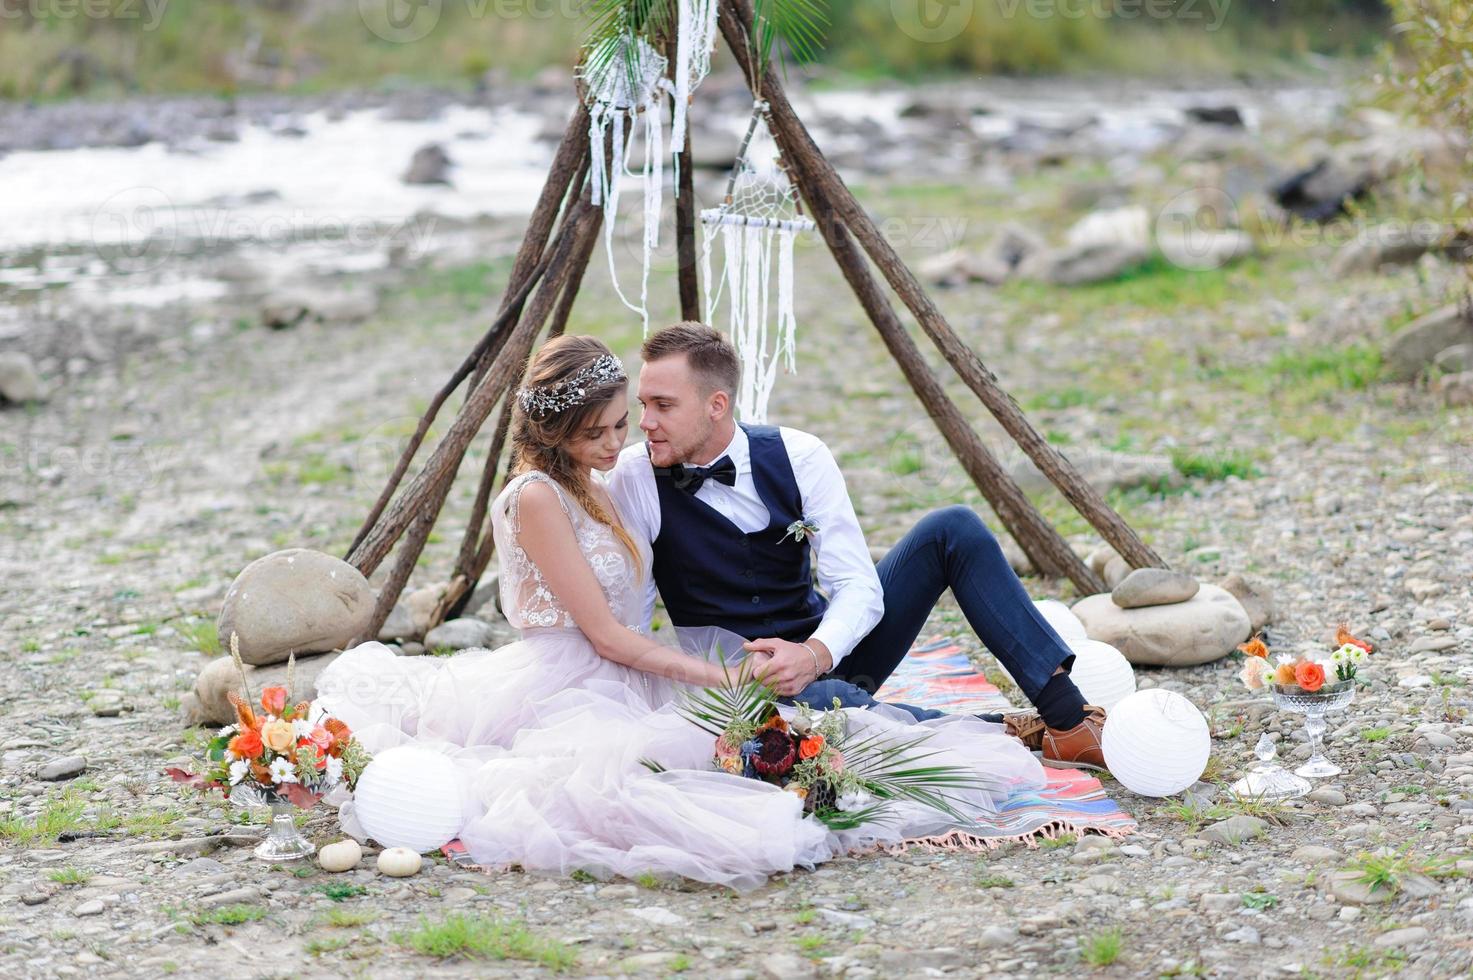 um atraente casal recém-casado, um momento feliz e alegre. um homem e uma mulher se barbeiam e se beijam com roupas de férias. cerimônia de casamento de estilo boêmio na floresta ao ar livre. foto